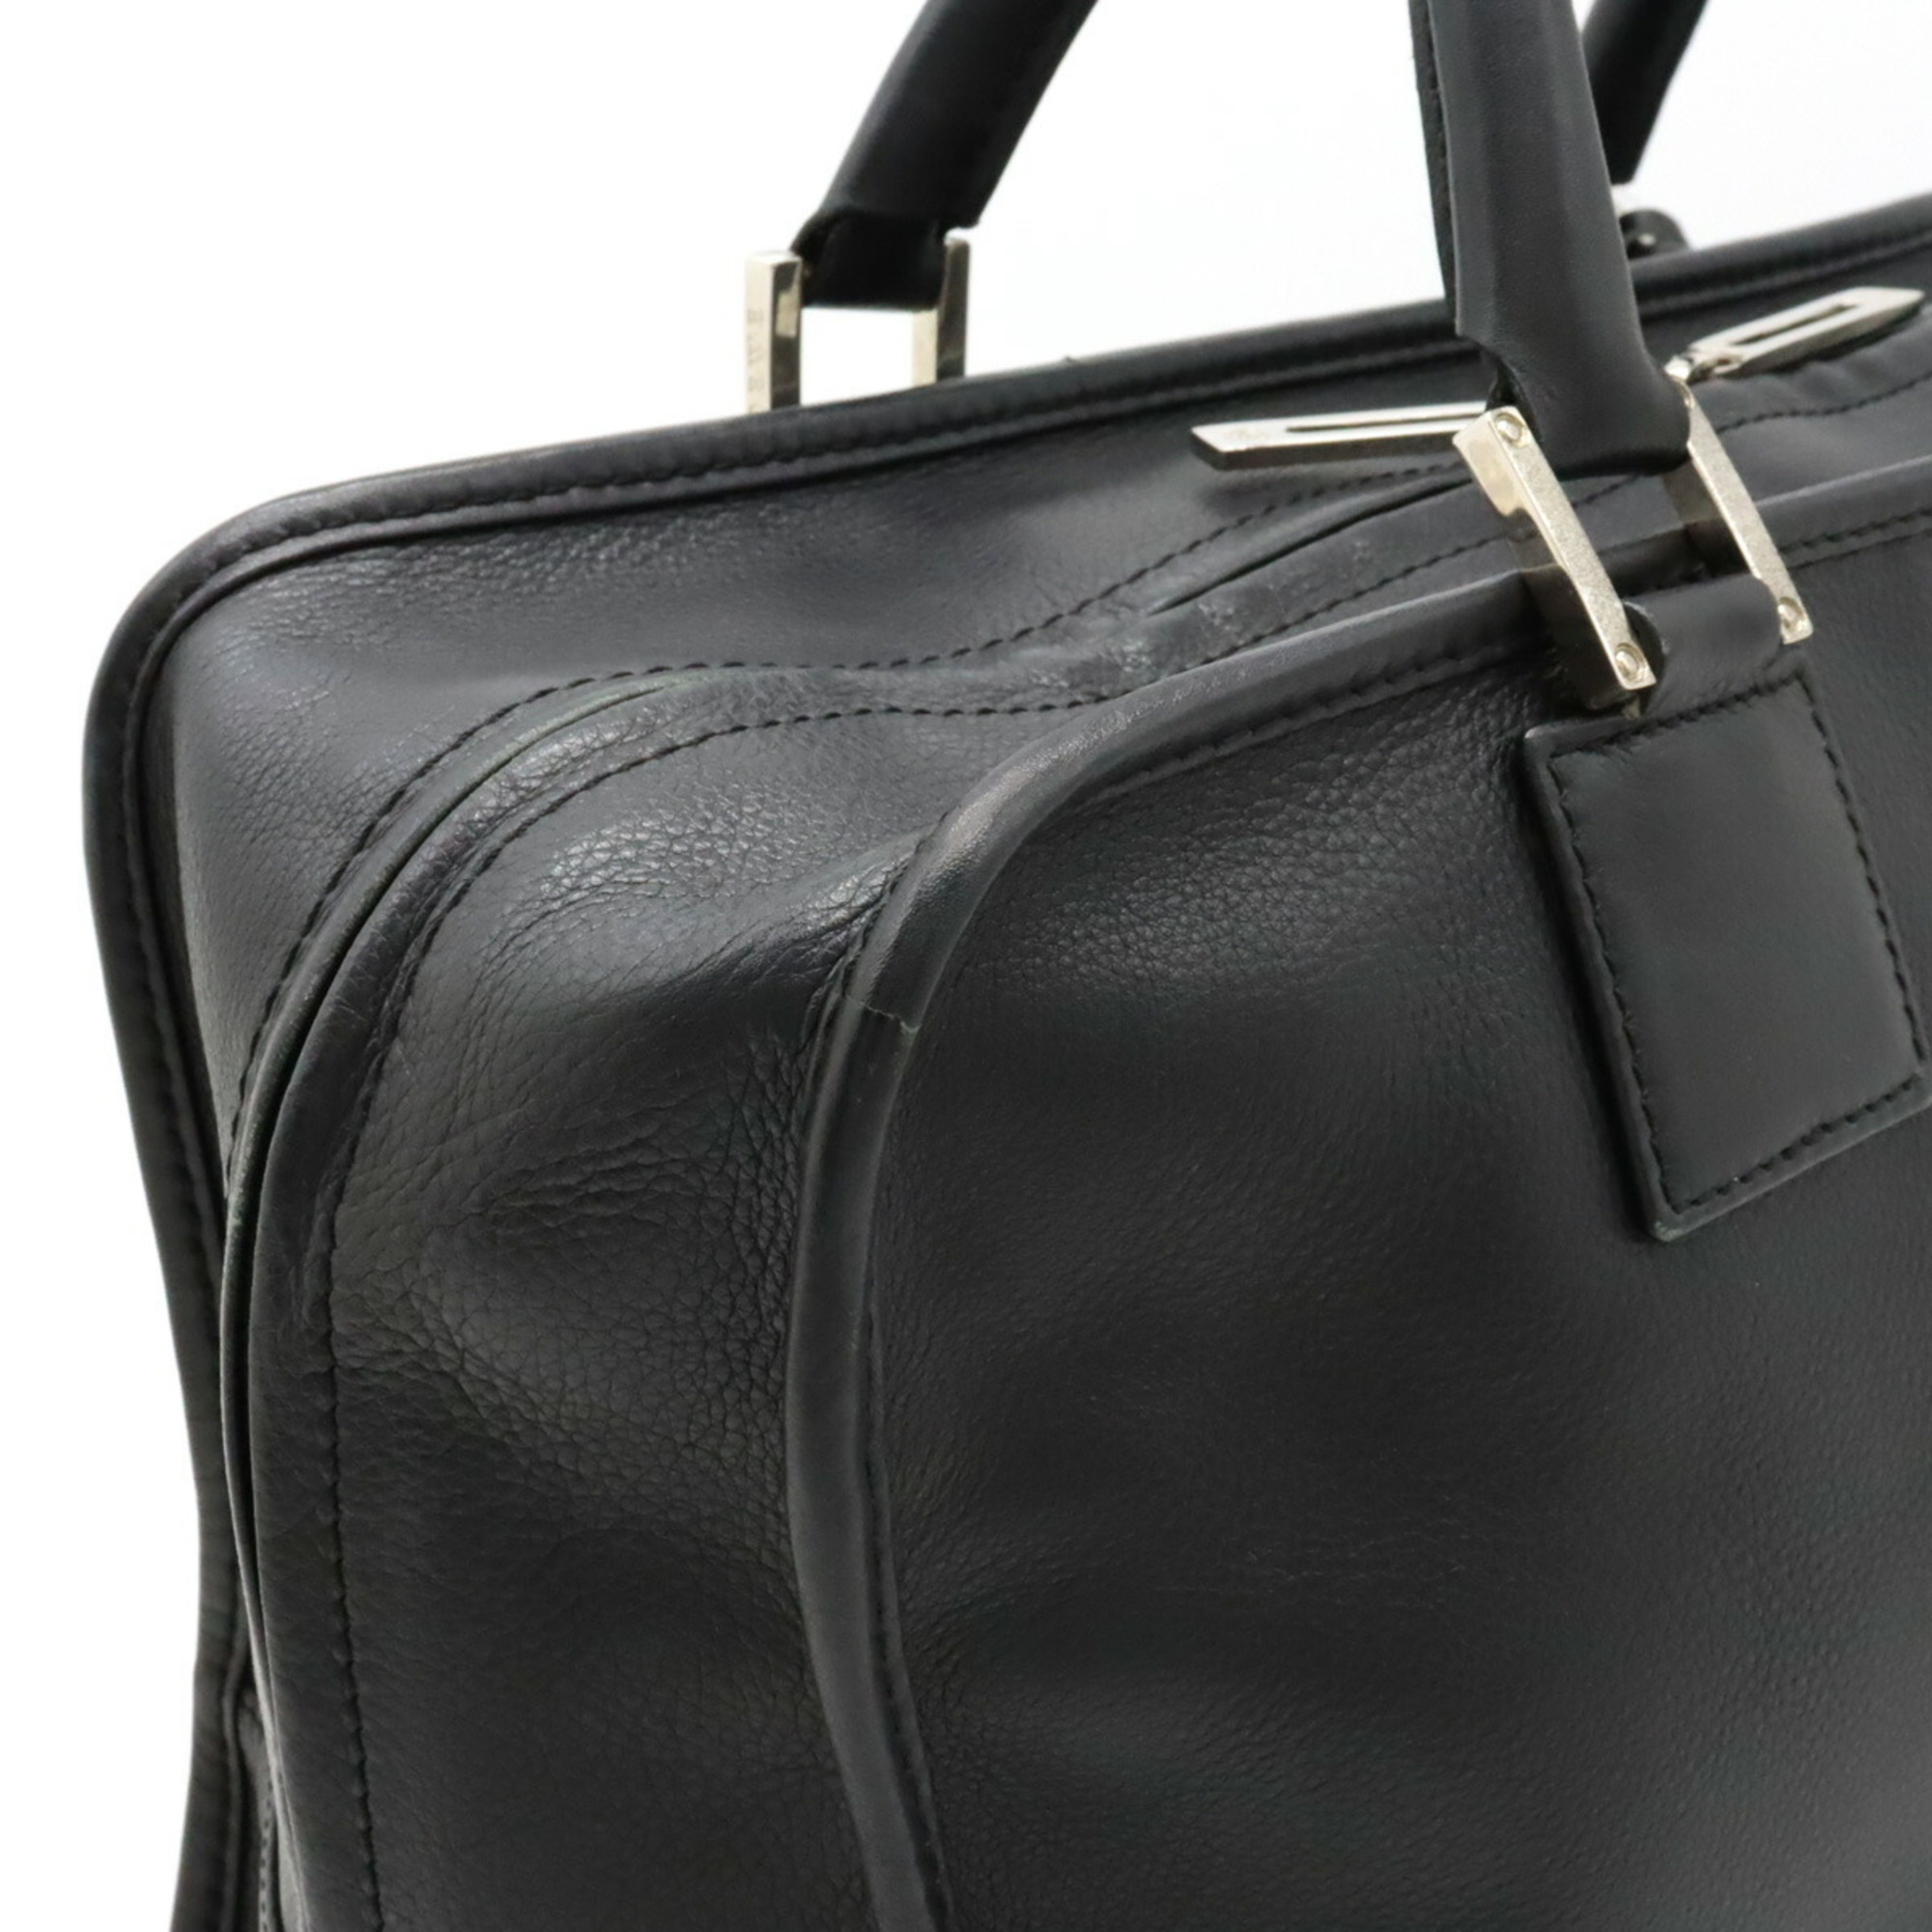 LOEWE Amazona 36 Anagram Handbag Boston Leather Black